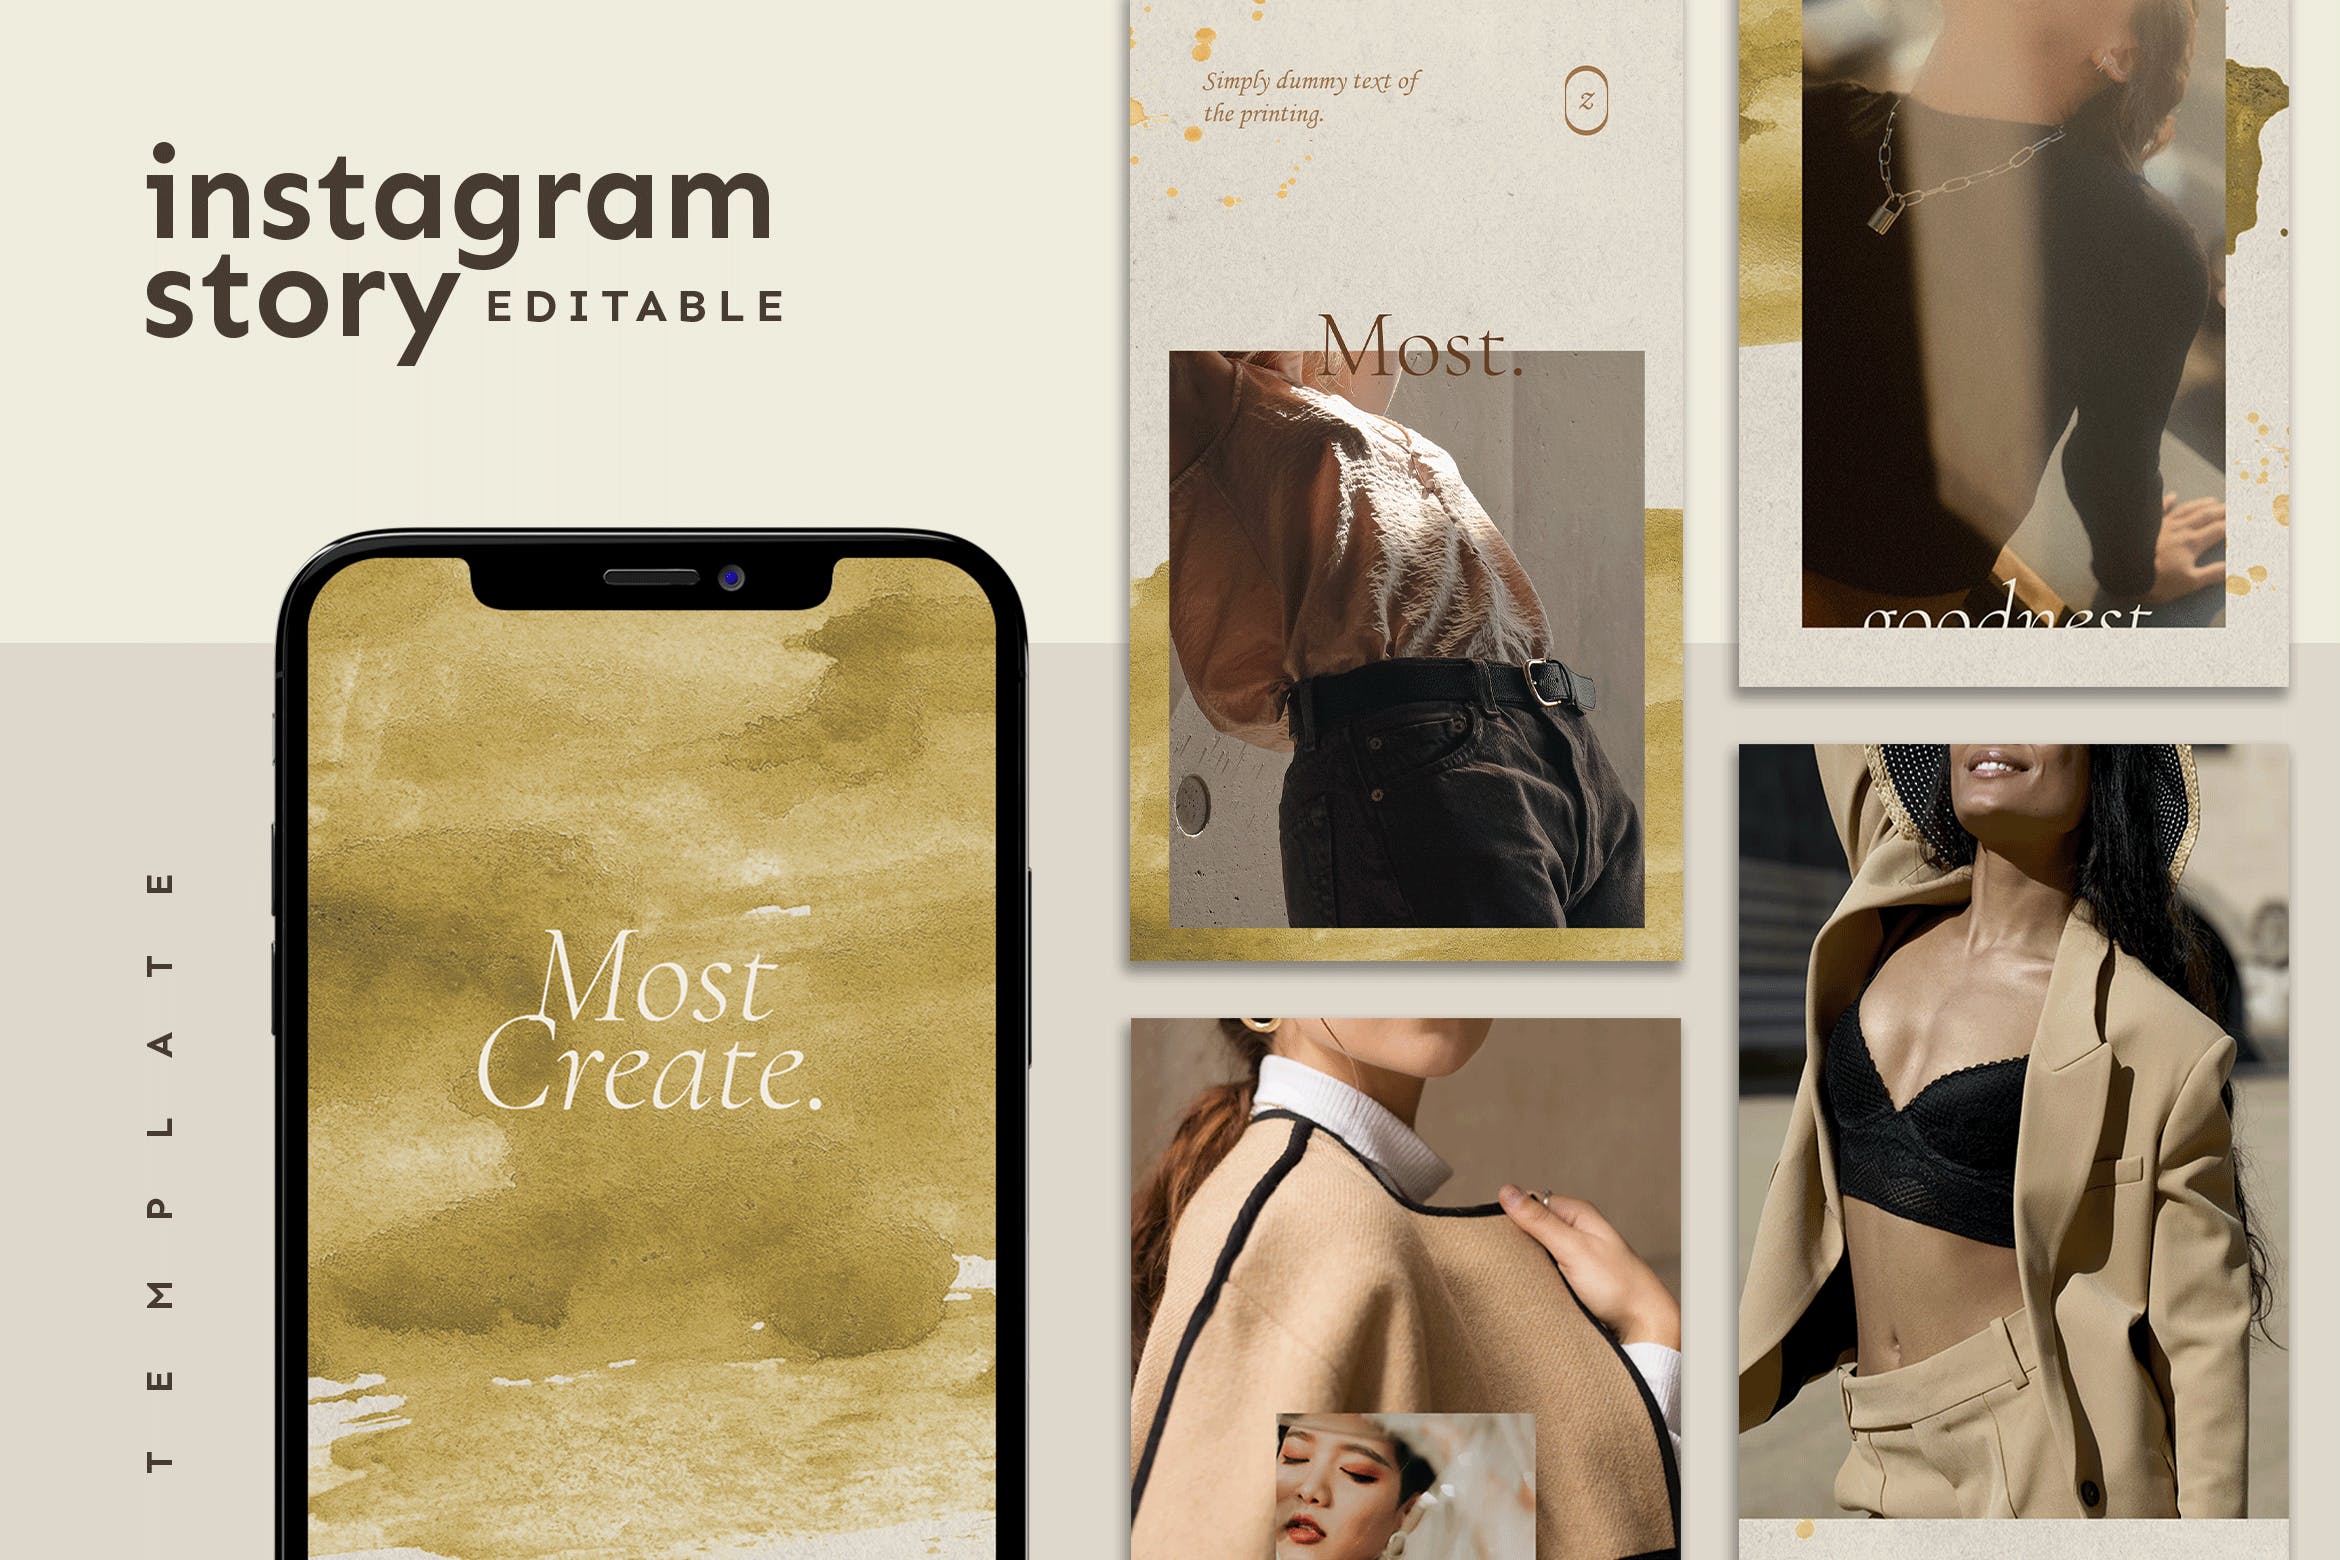 服装品牌故事金色纹理Instagram贴图模板素材 Instagram Story Template设计素材模板